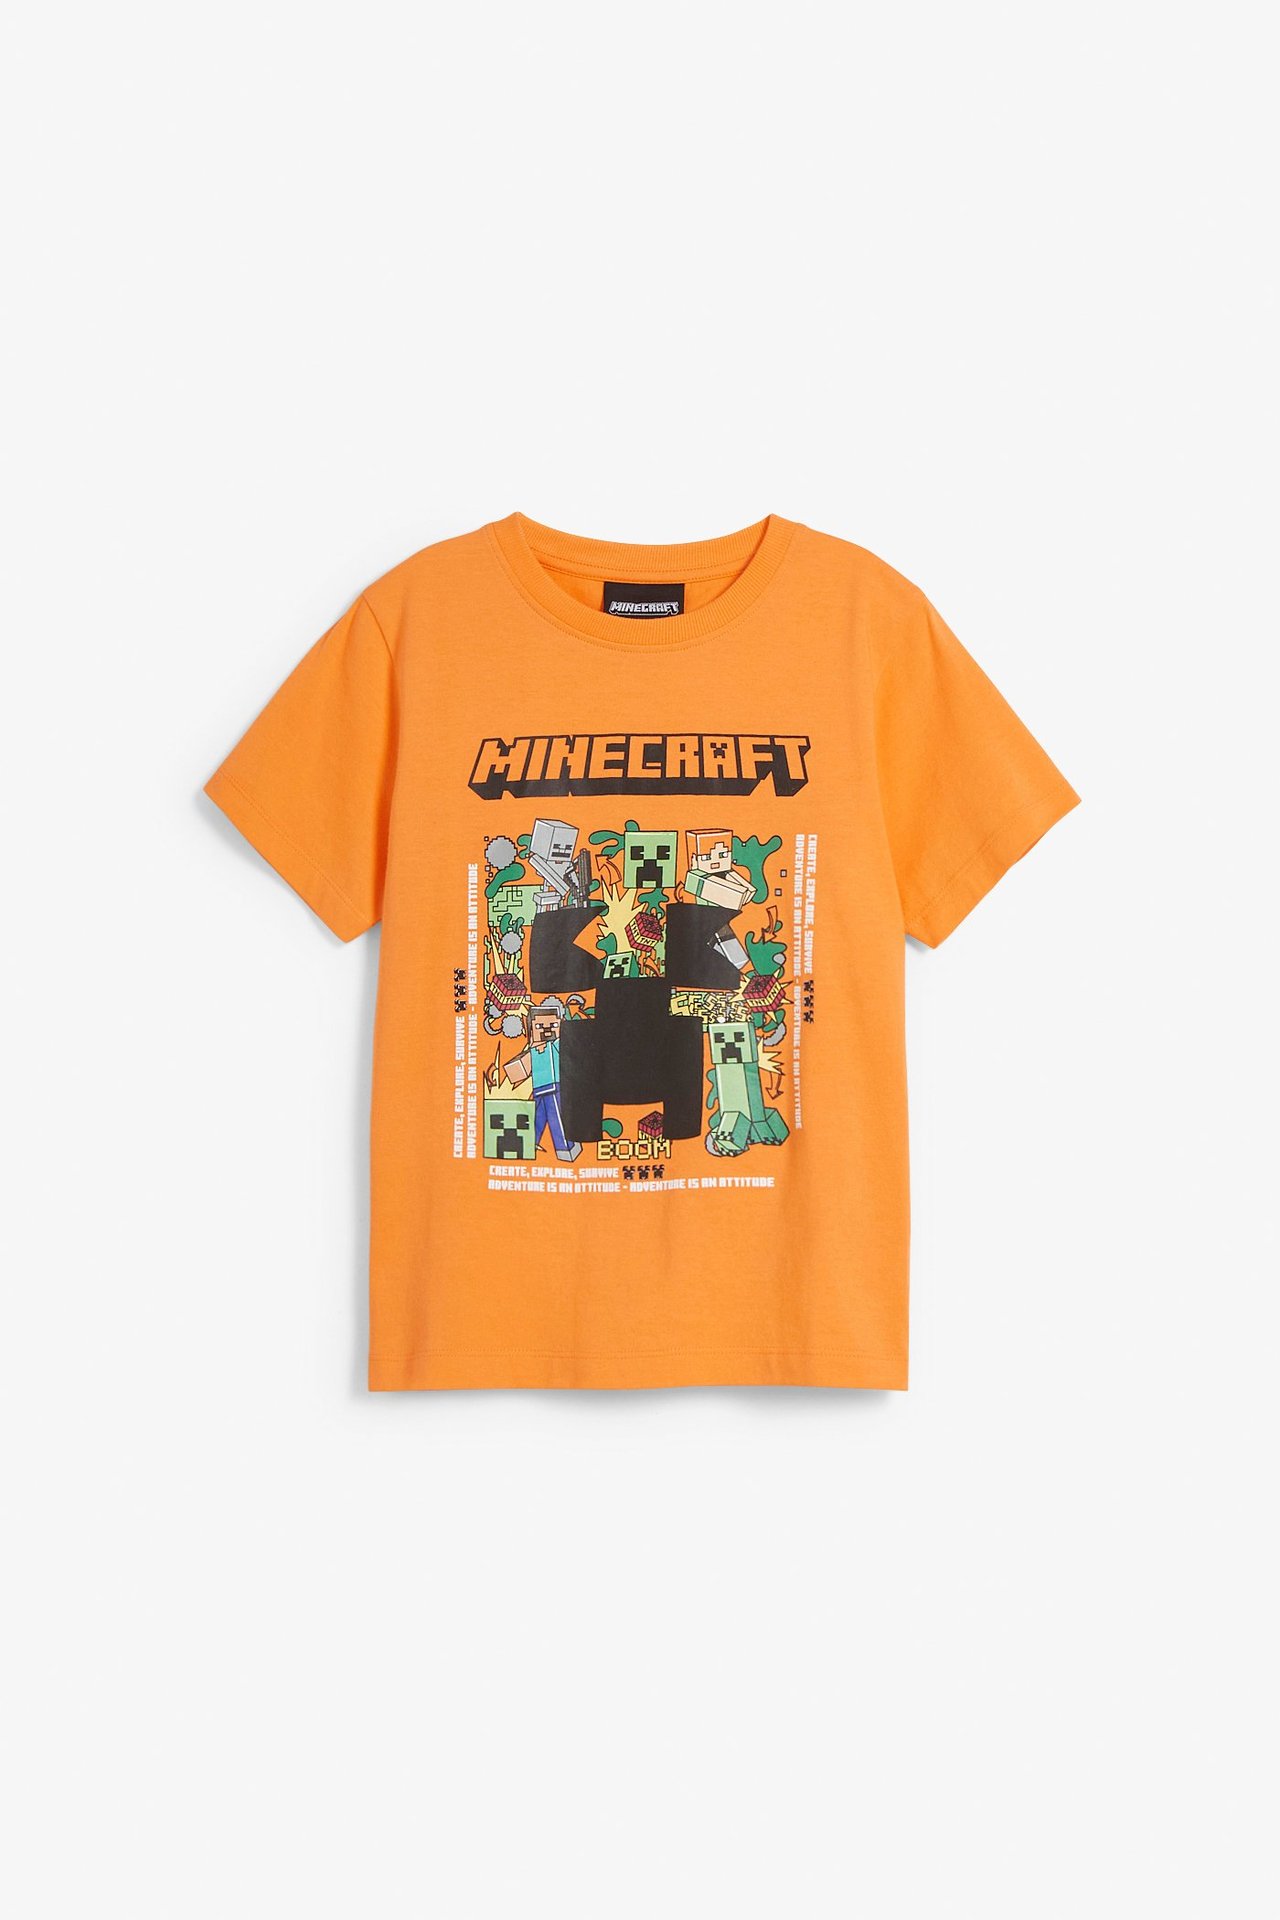 T-shirt Minecraft Orange - 110/116 - 0